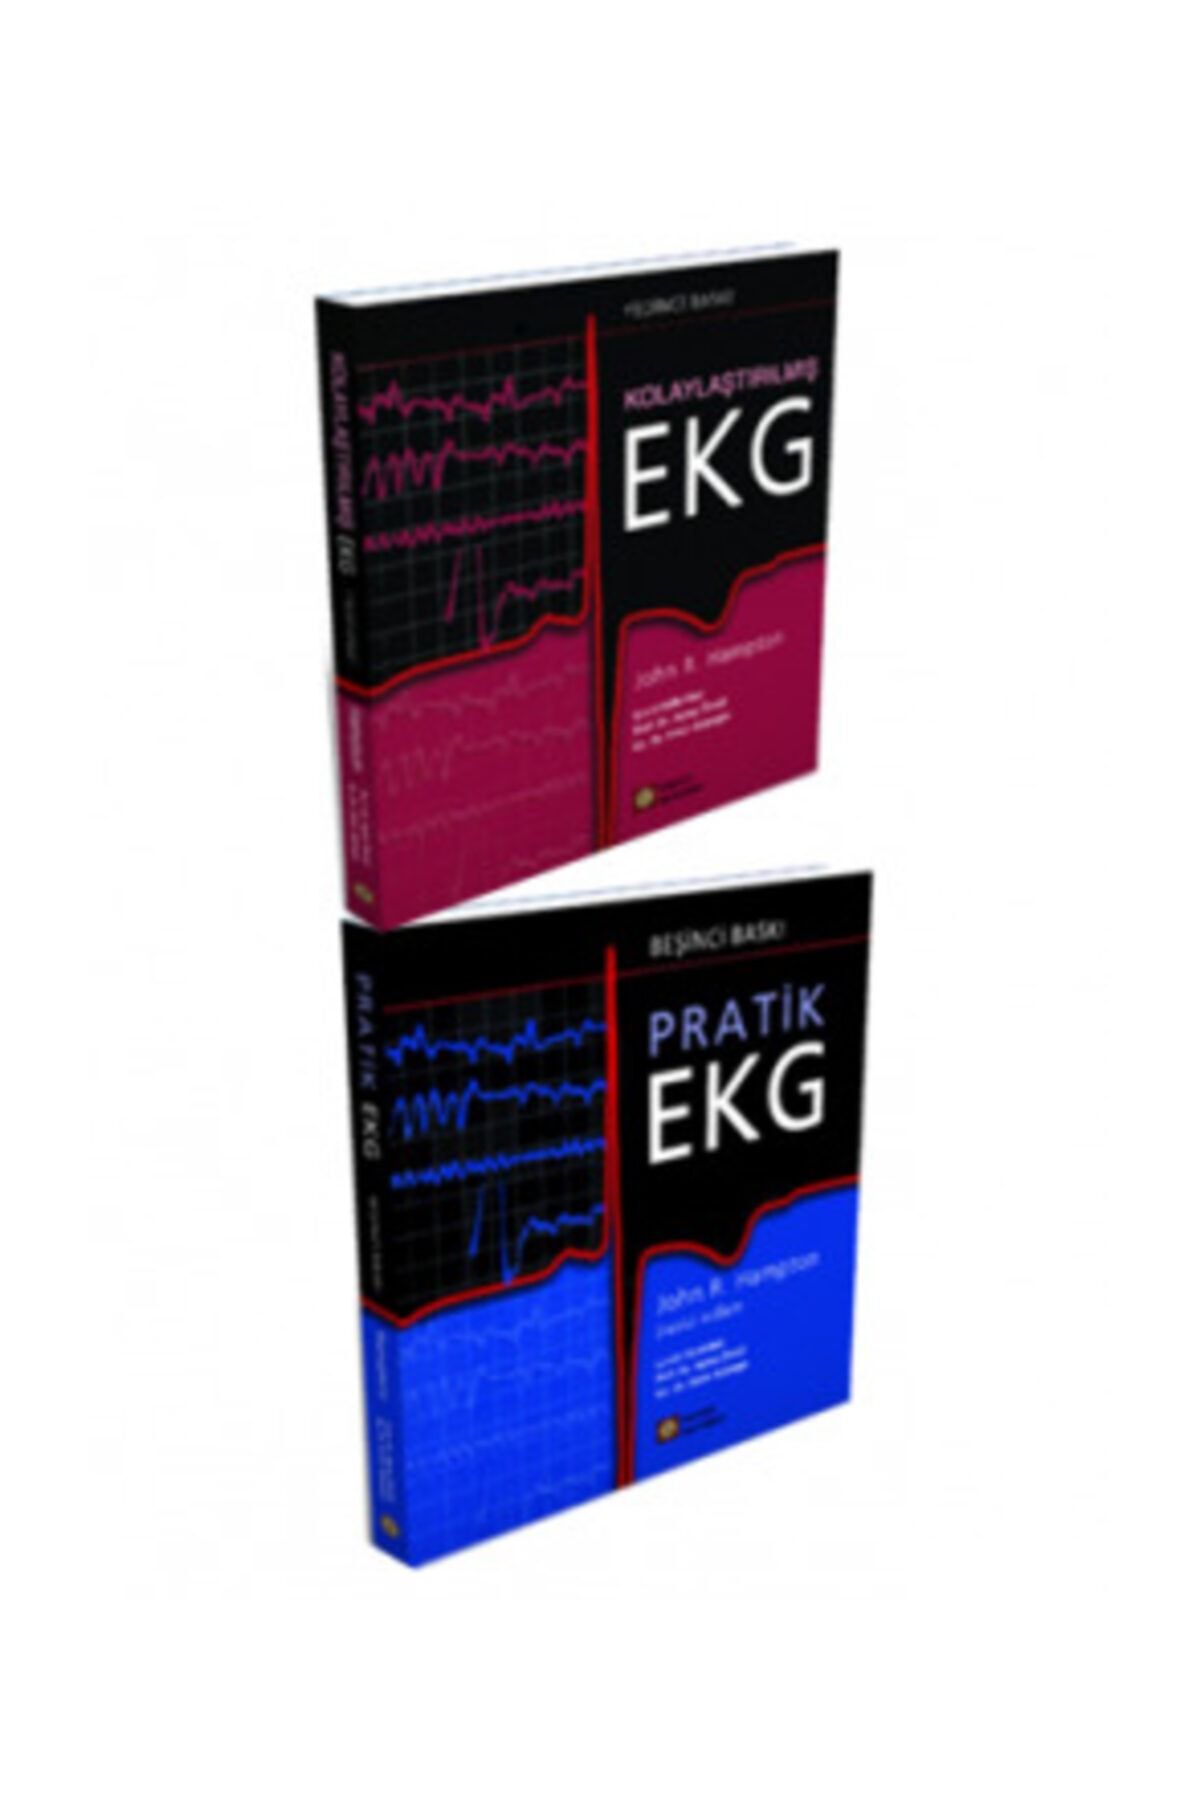 İstanbul Tıp Kitabevi Ekg Özel Set : Kolaylaştırılmış Ekg + Pratik Ekg (2 Kitap Birarada) EKG ÖZEL2